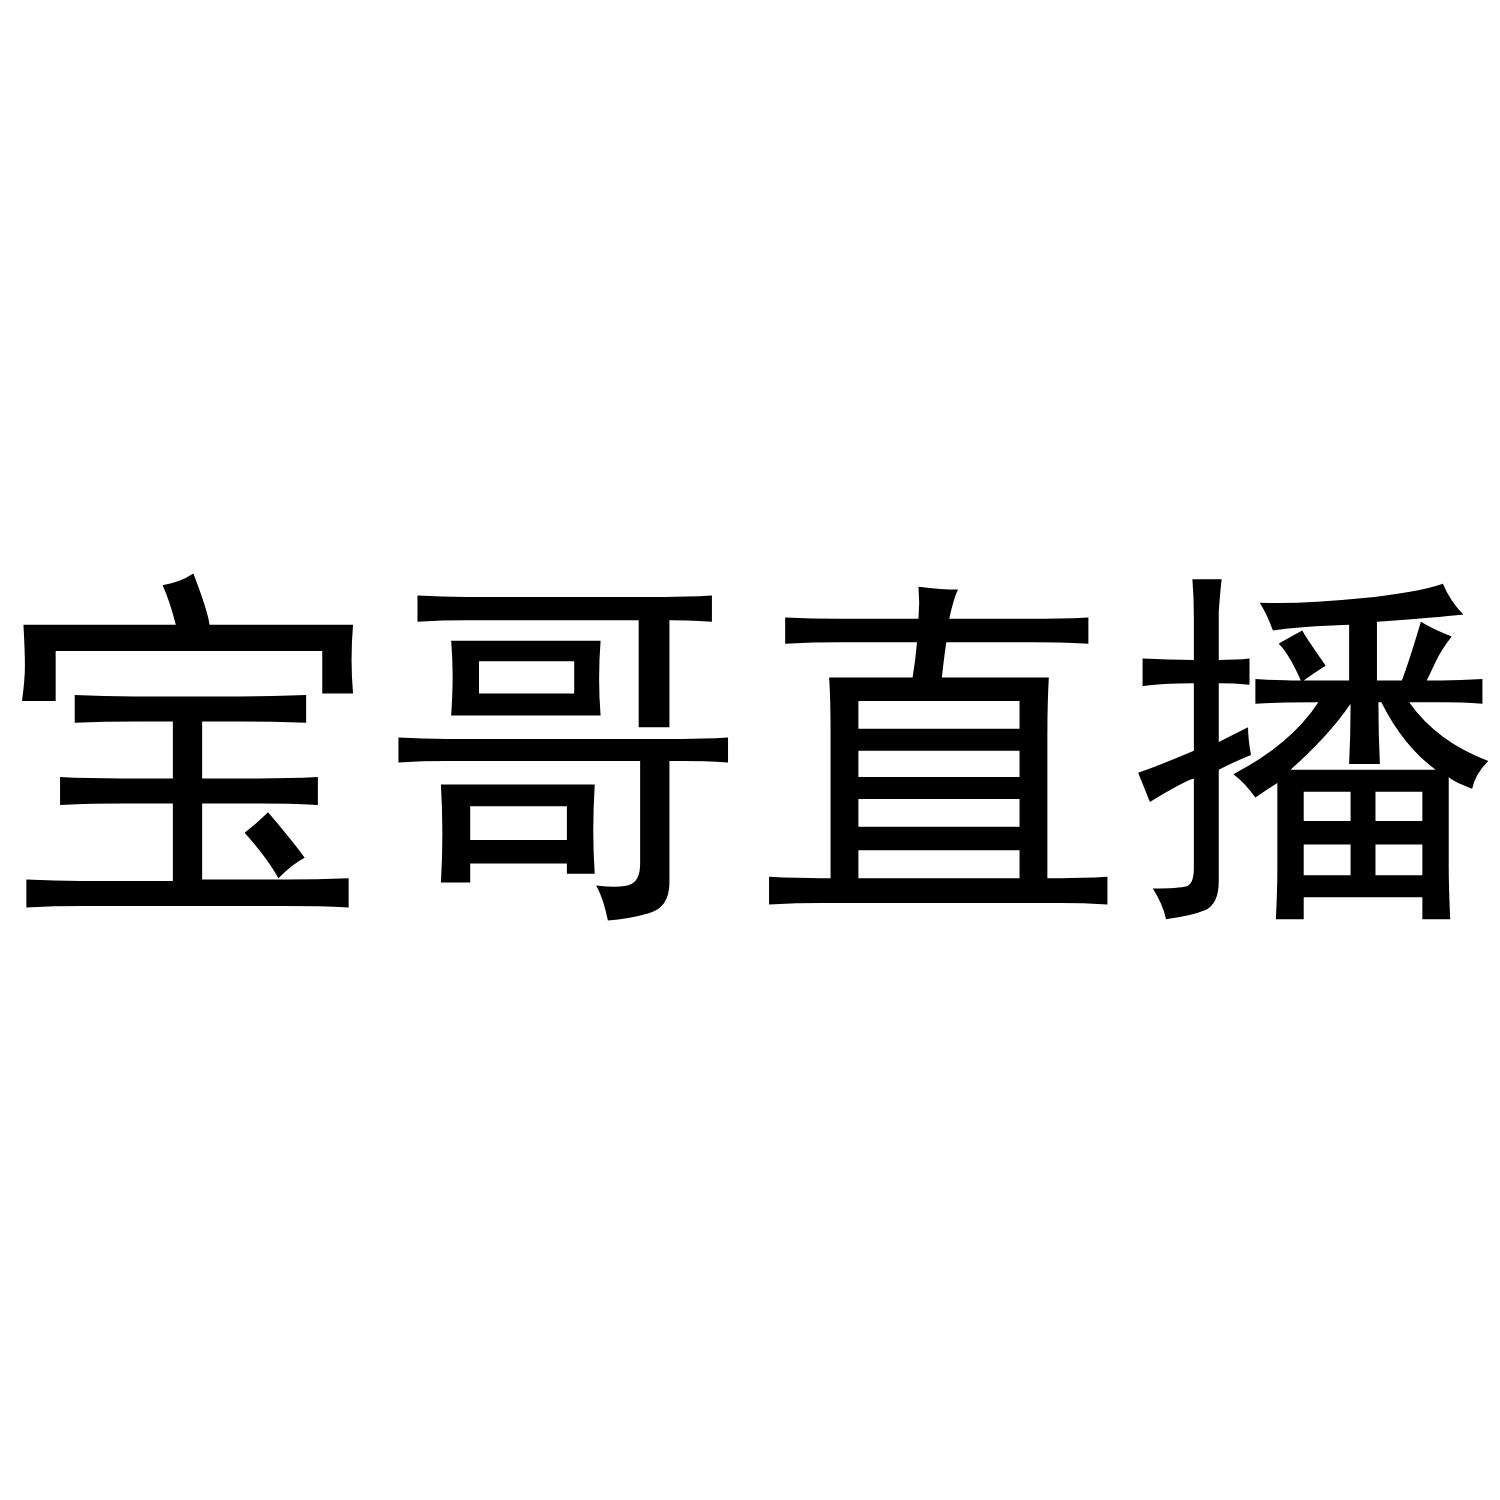 商标文字宝哥直播商标注册号 45490239,商标申请人杭州飞音文化传媒